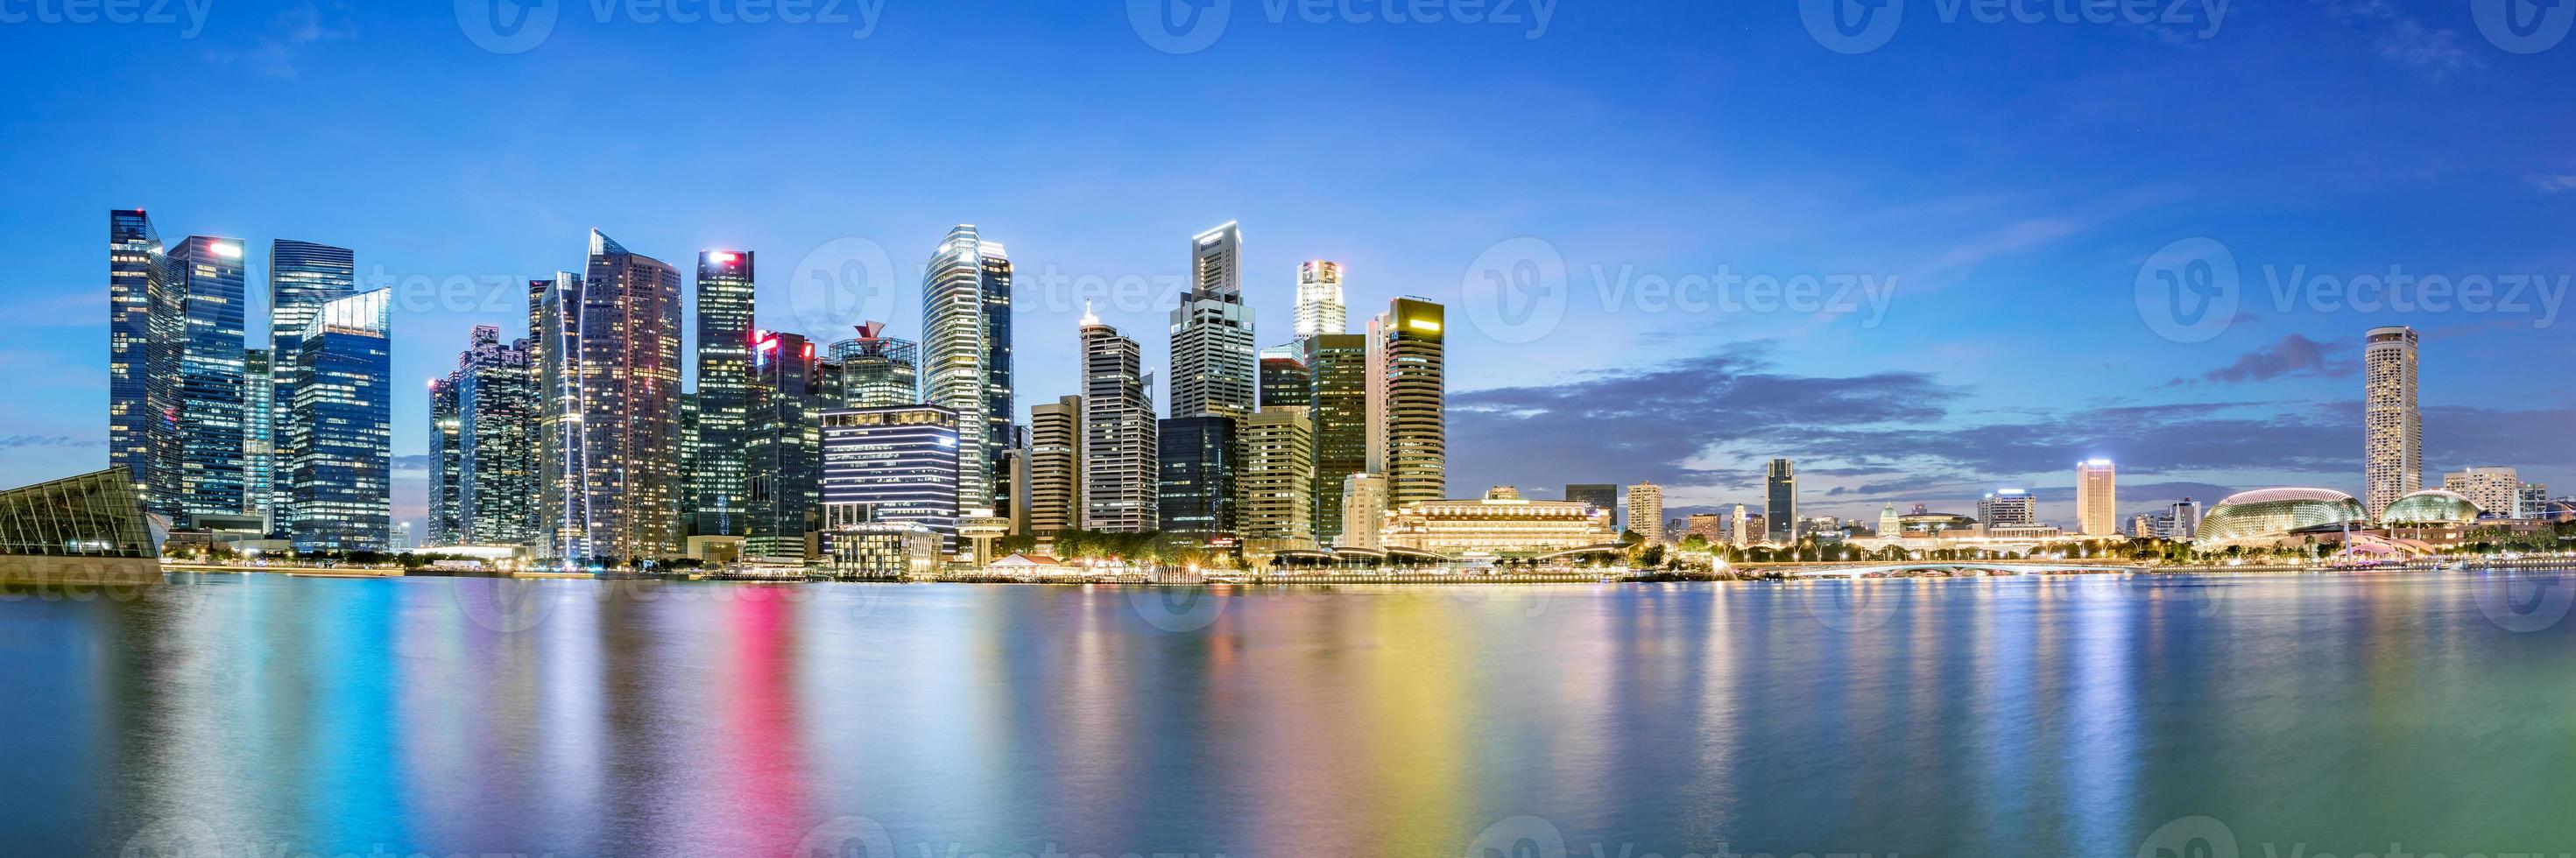 skyline van het financiële district van singapore in marina bay op schemeringtijd. foto